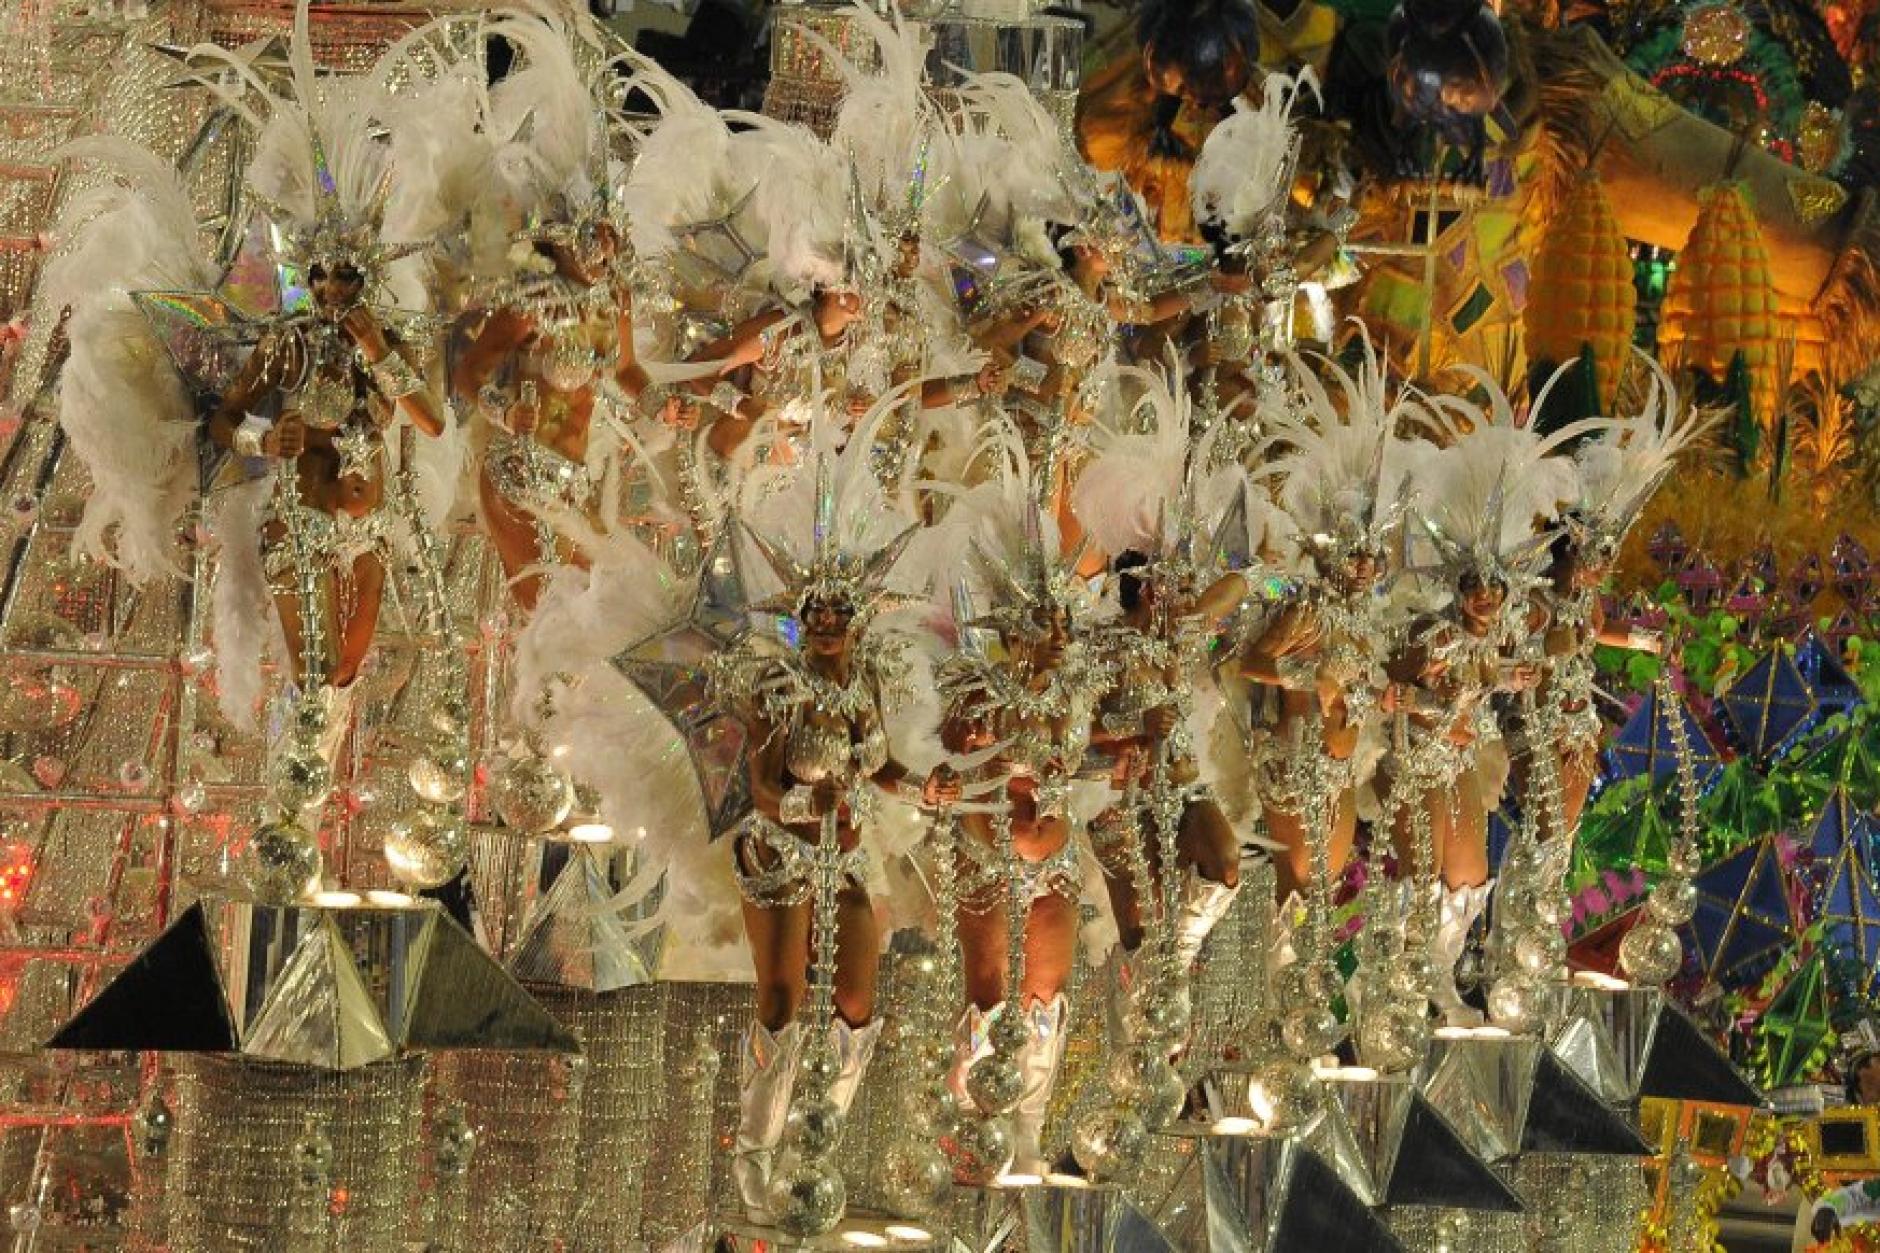 Die Schönsten Bilder Vom Karneval In Rio Augsburger Allgemeine